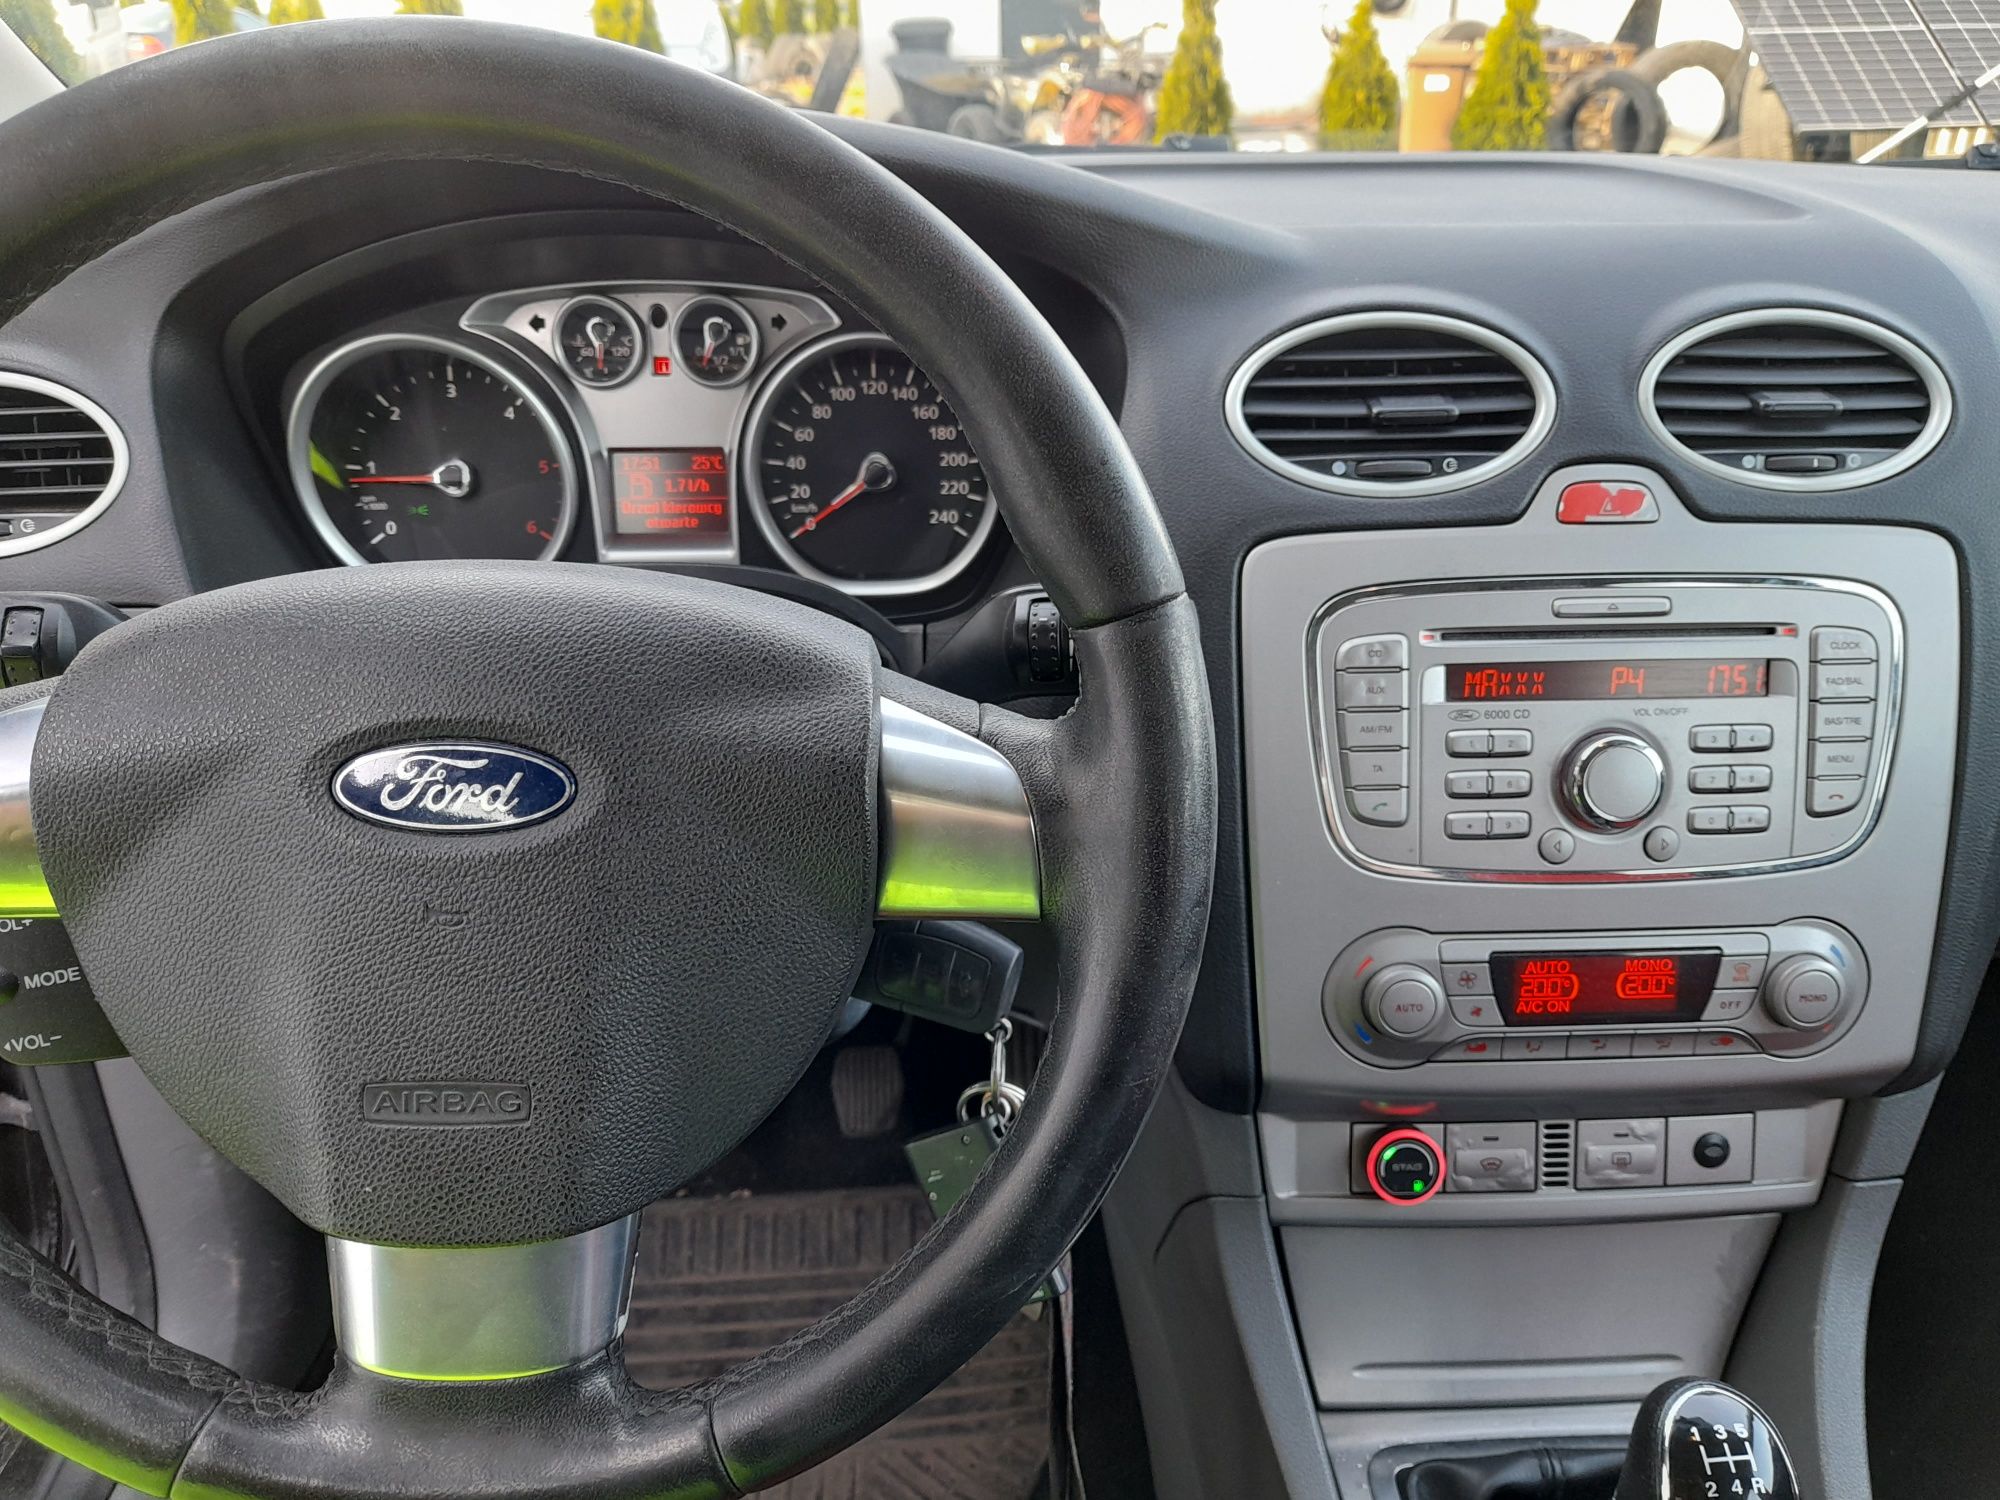 Ford Focus 1.6 16v Klima, LPG